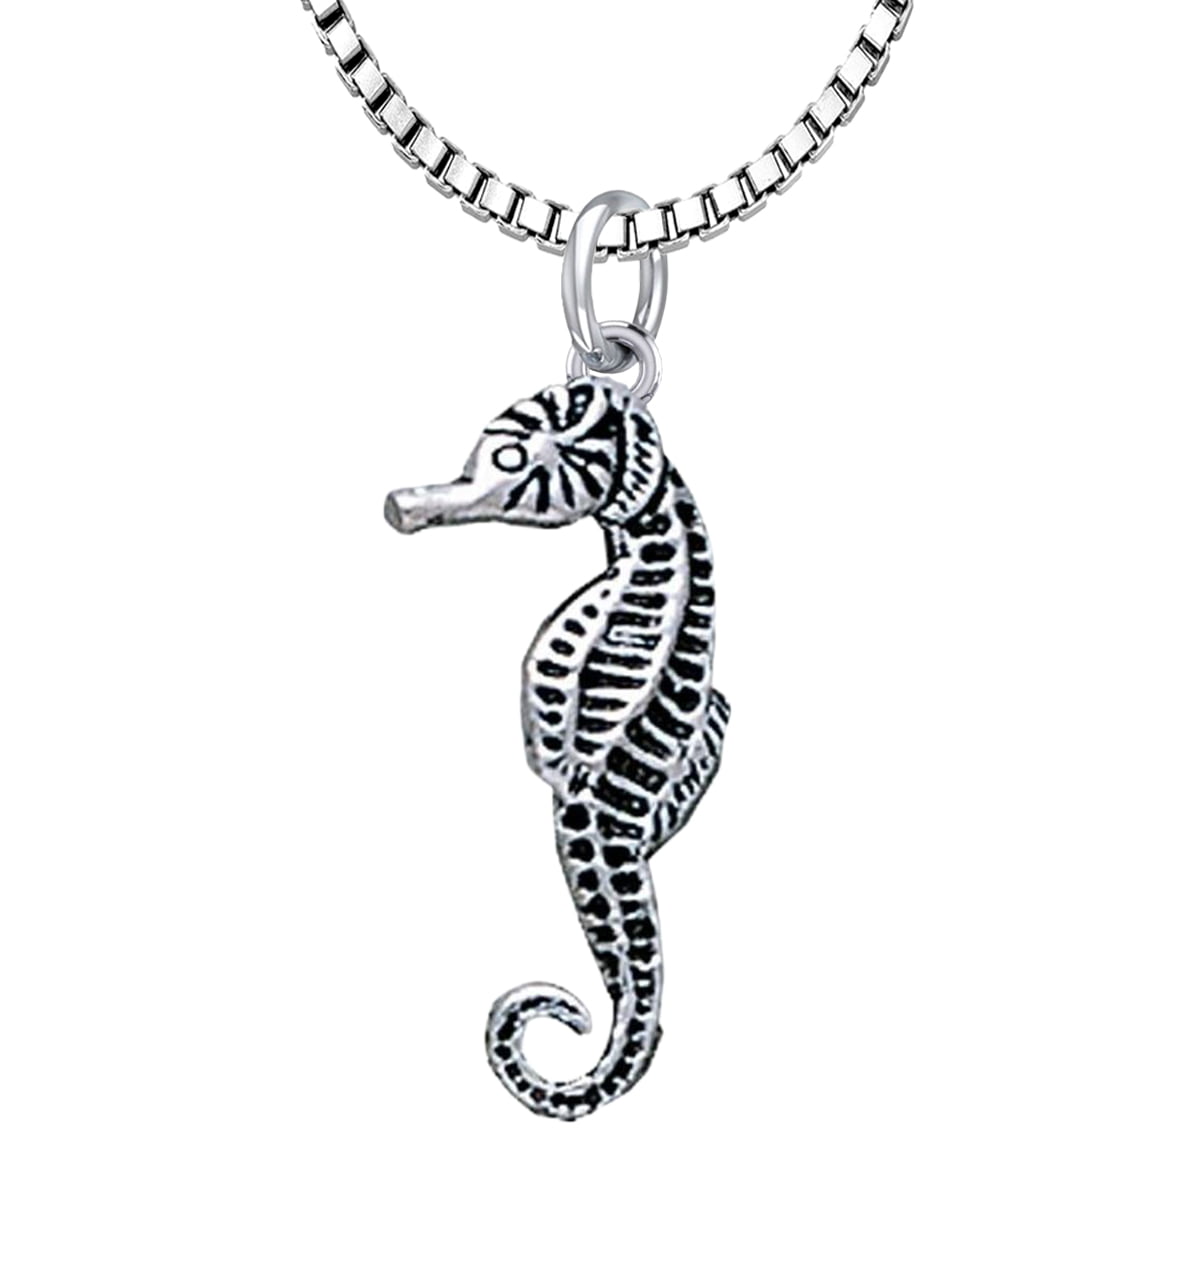 præambel Grønland opfindelse New Solid 925 Sterling Silver 3D Seahorse Aquatic Charm Pendant for Necklace  - Walmart.com